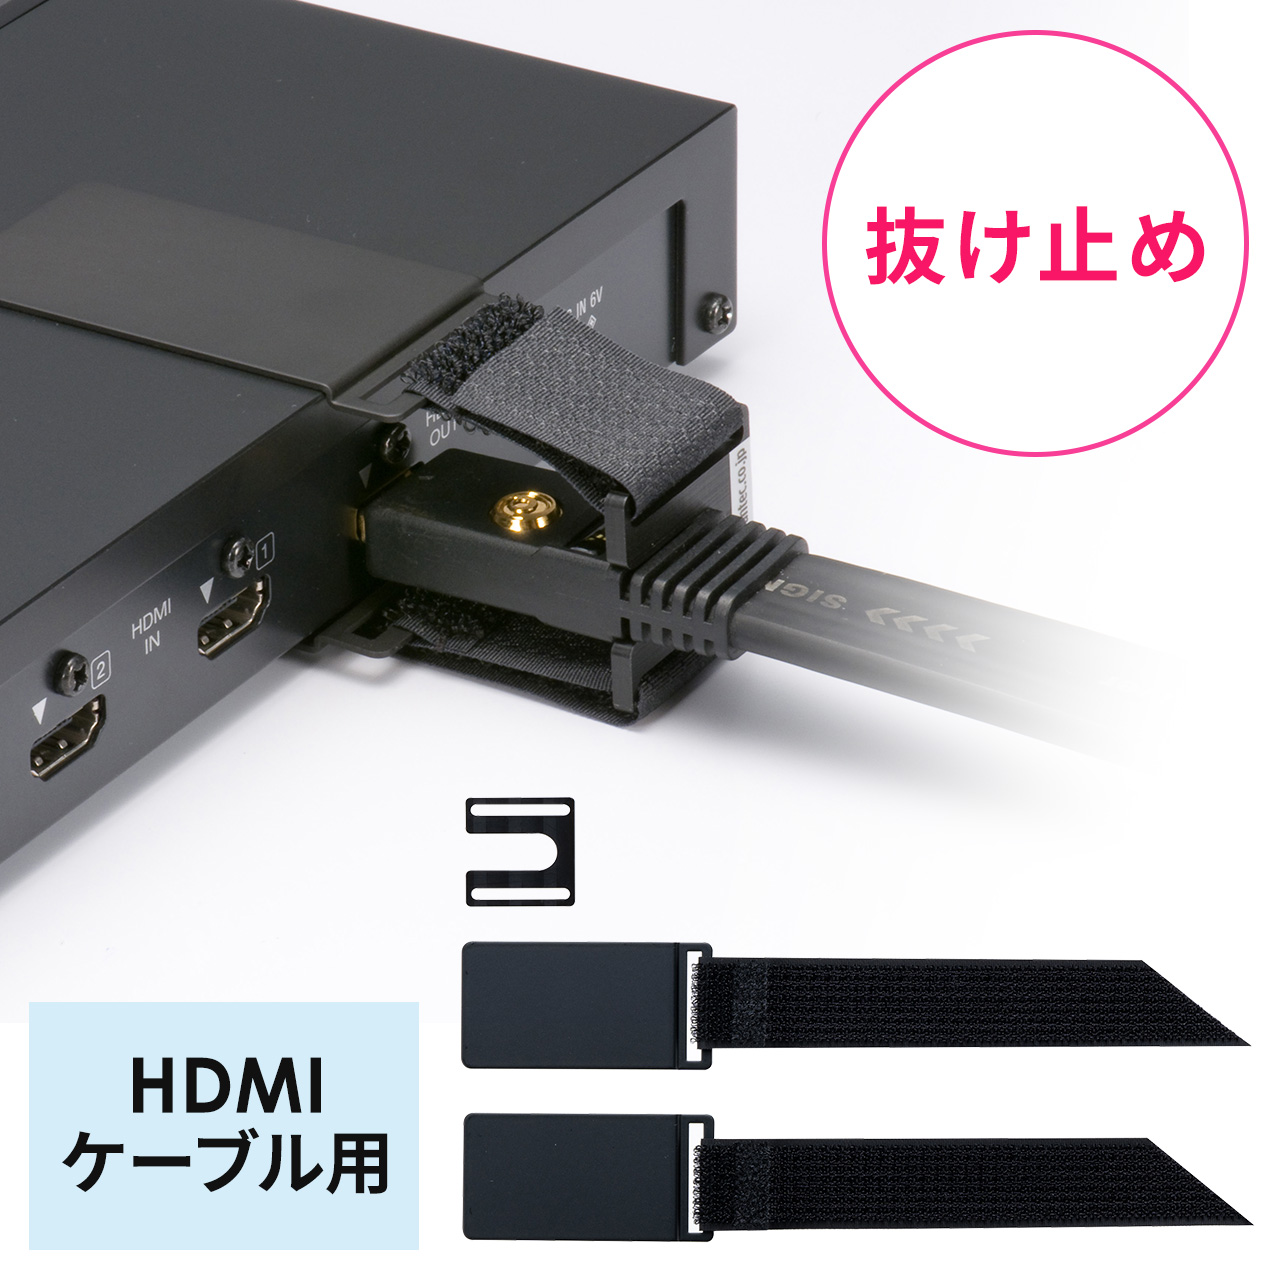 抜け止めツール HDMIケーブル用 セキュリティ アヴァンテック 200-SL105